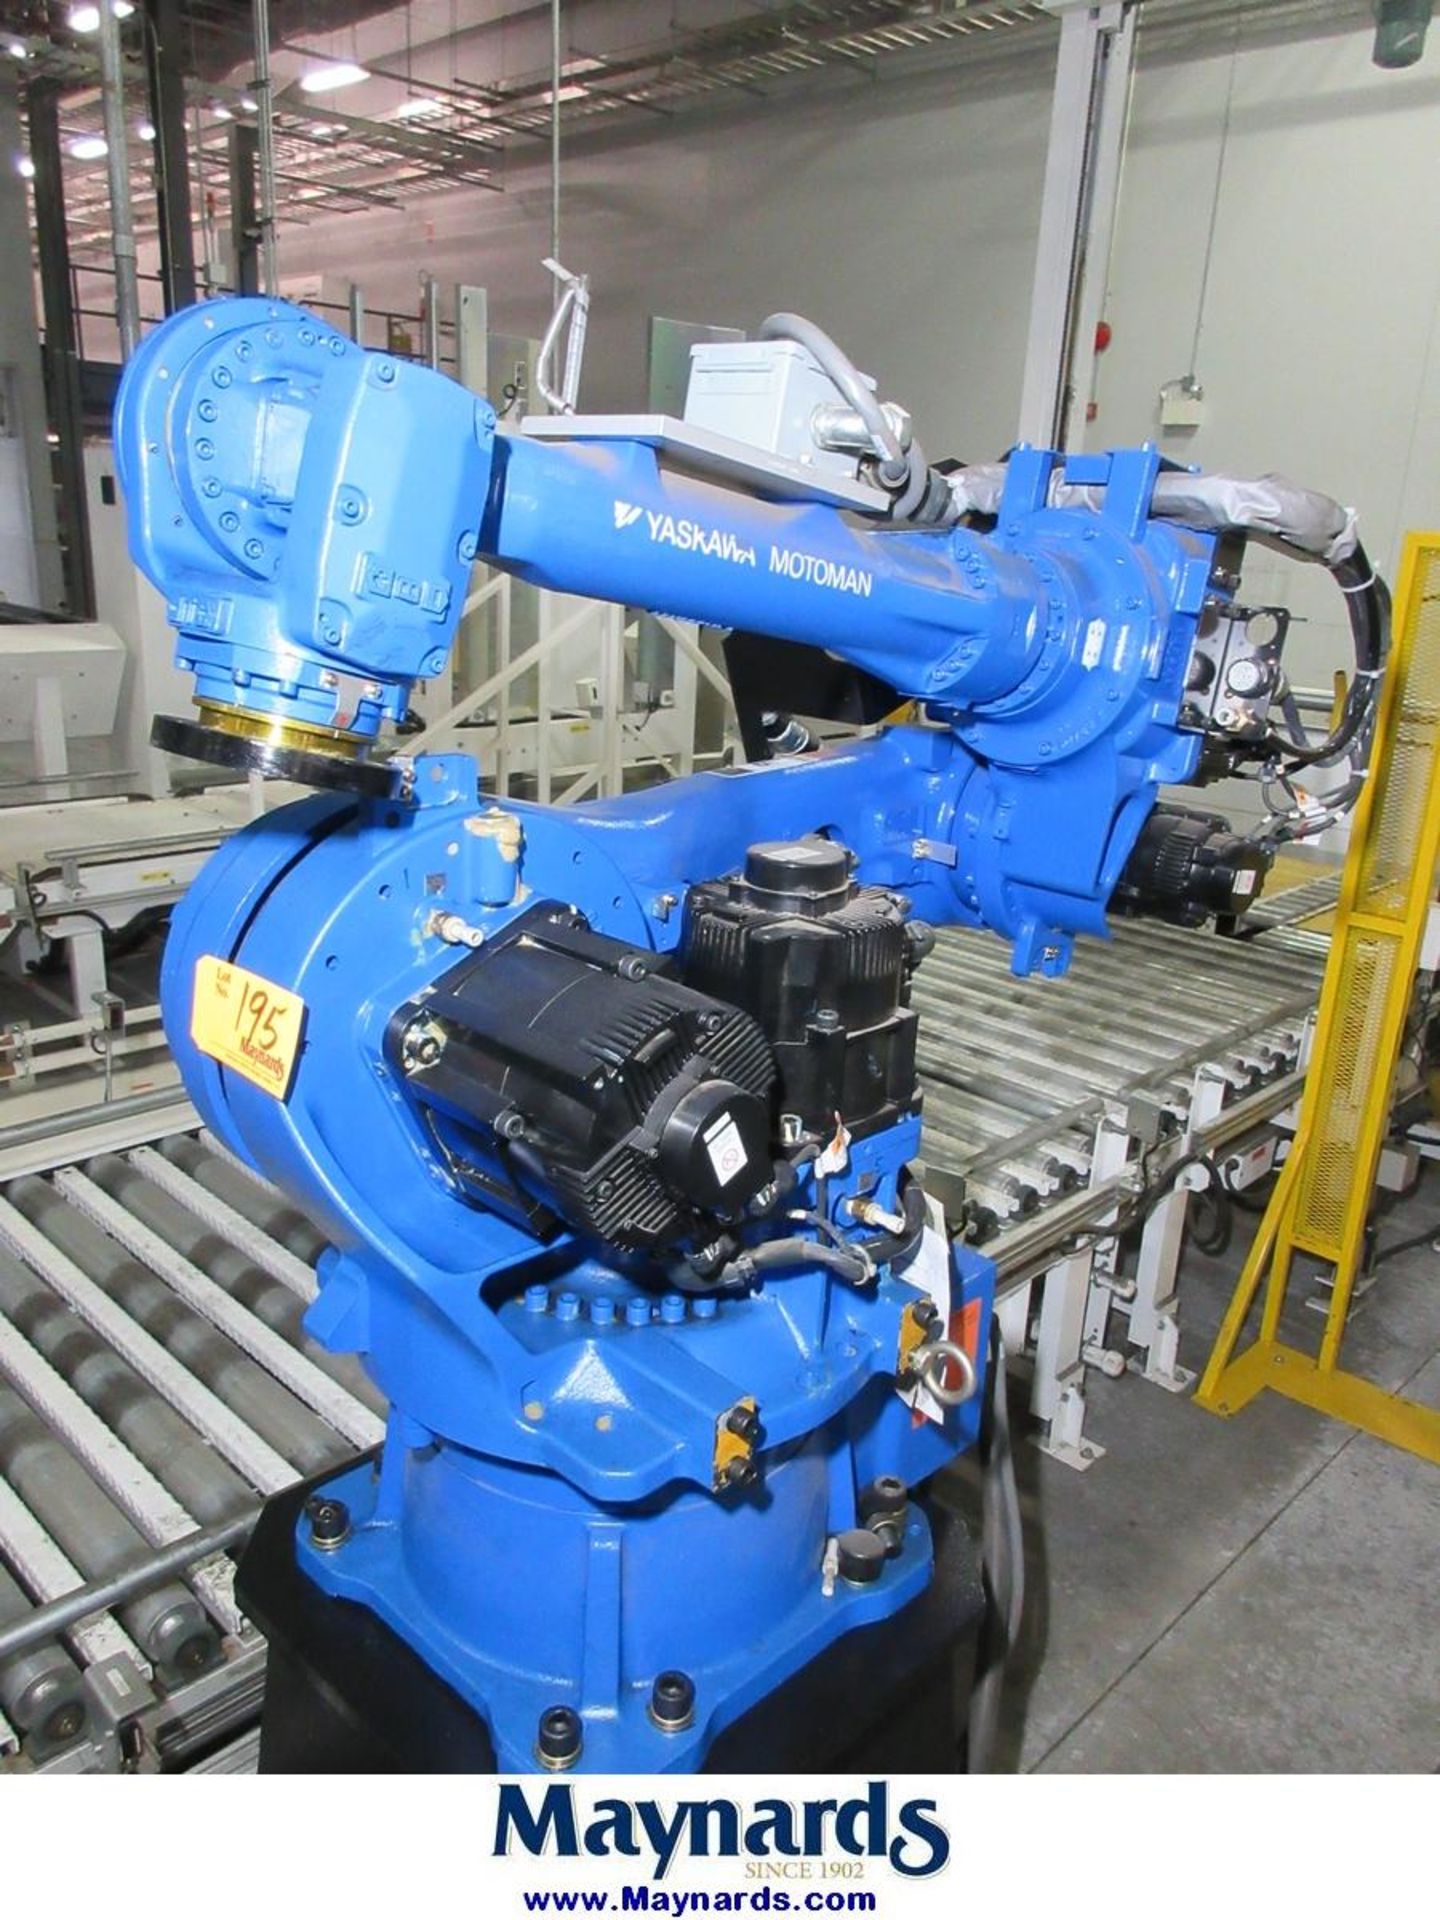 2011 Yaskawa Motoman MPL80 Type YR-MPL0080-A04 Material Handling Robot - Image 2 of 13